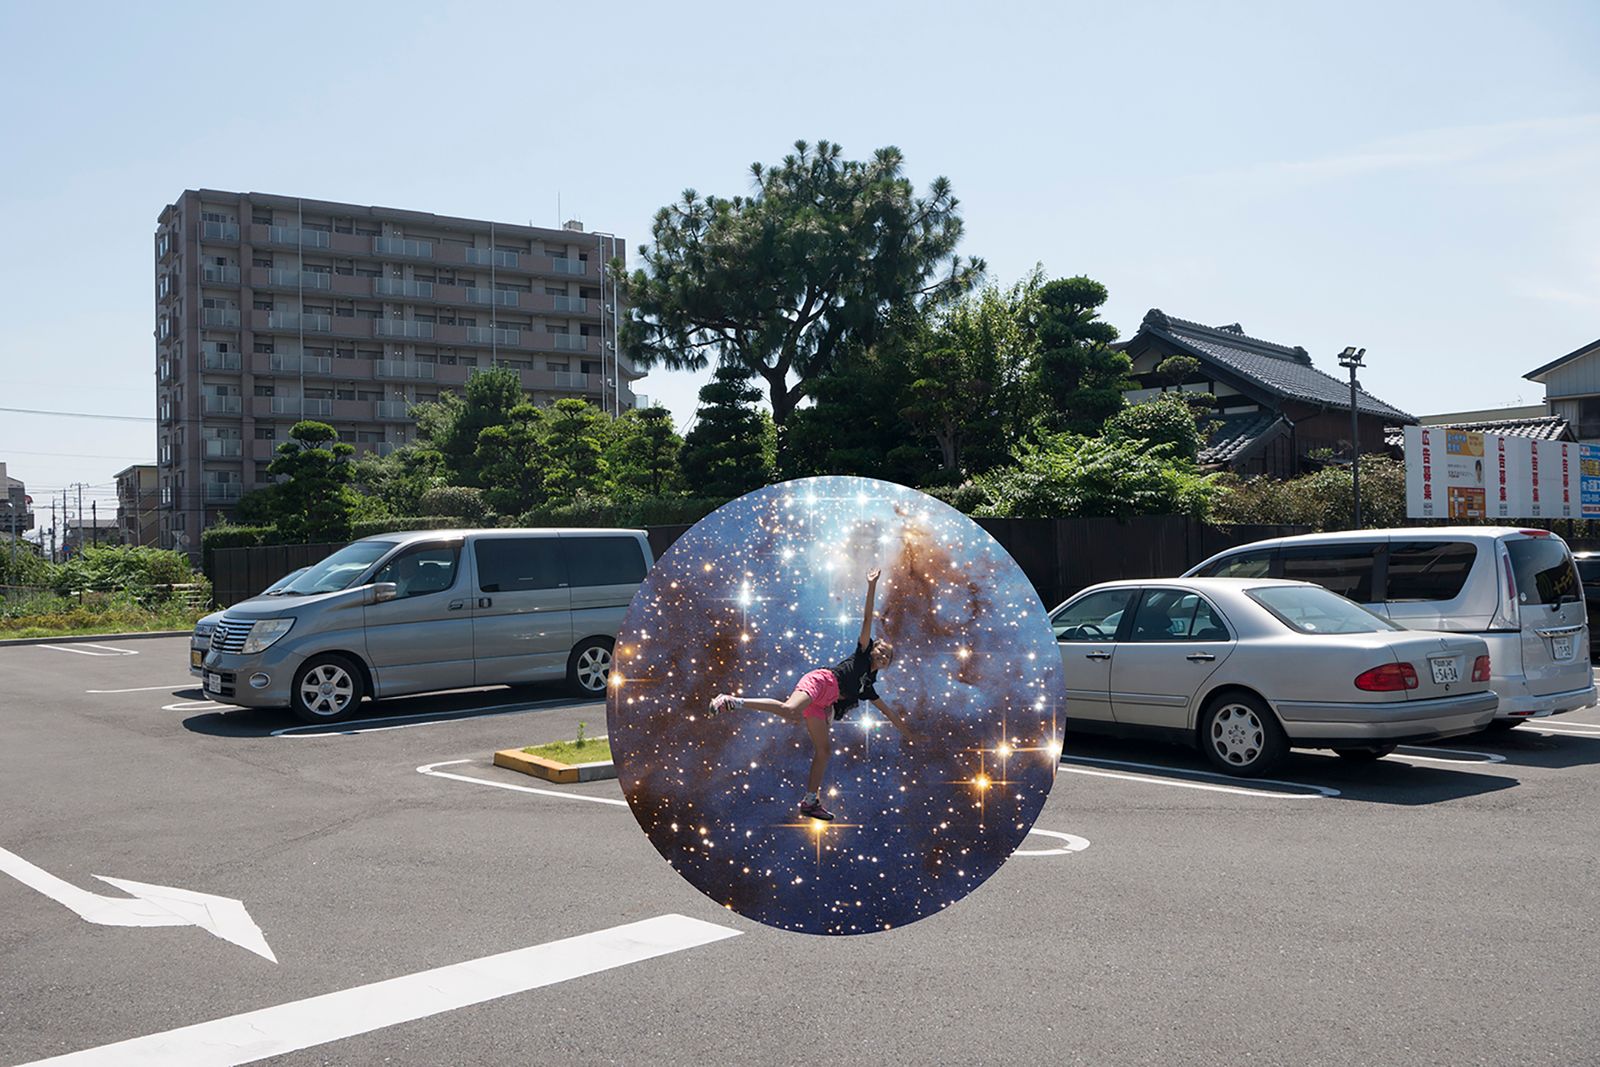 © Marilyne Grimmer - Matsudo, Japan - the stars